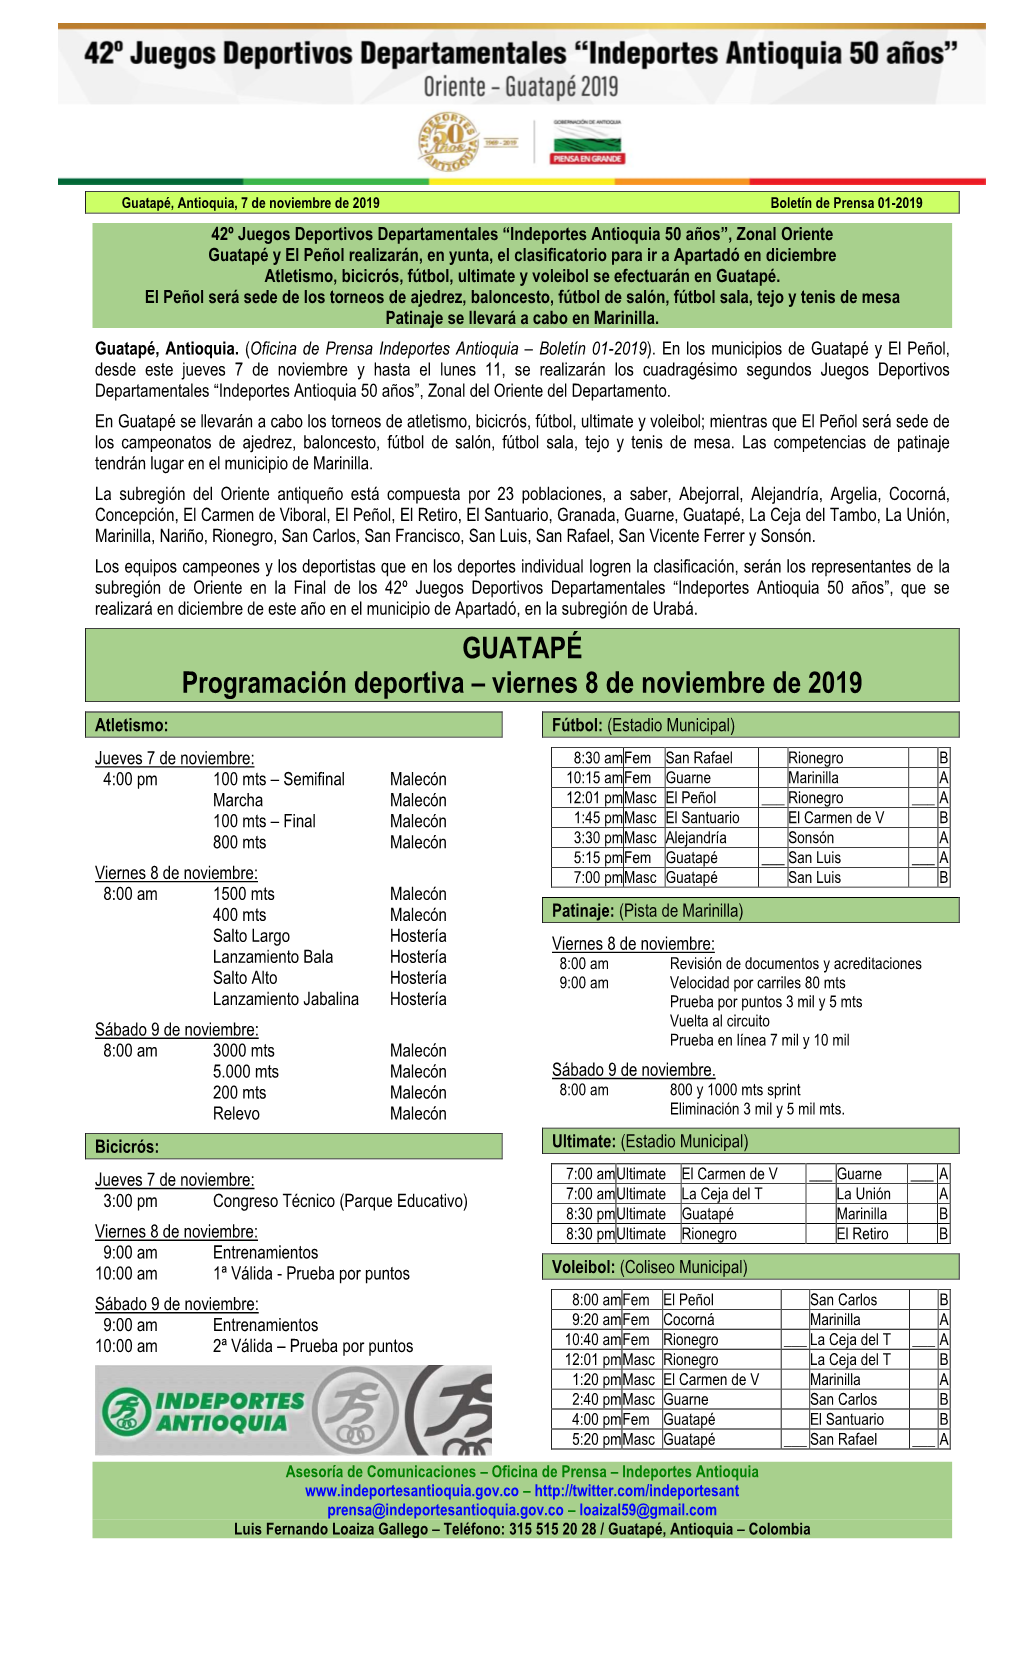 Guatapé 01-2019